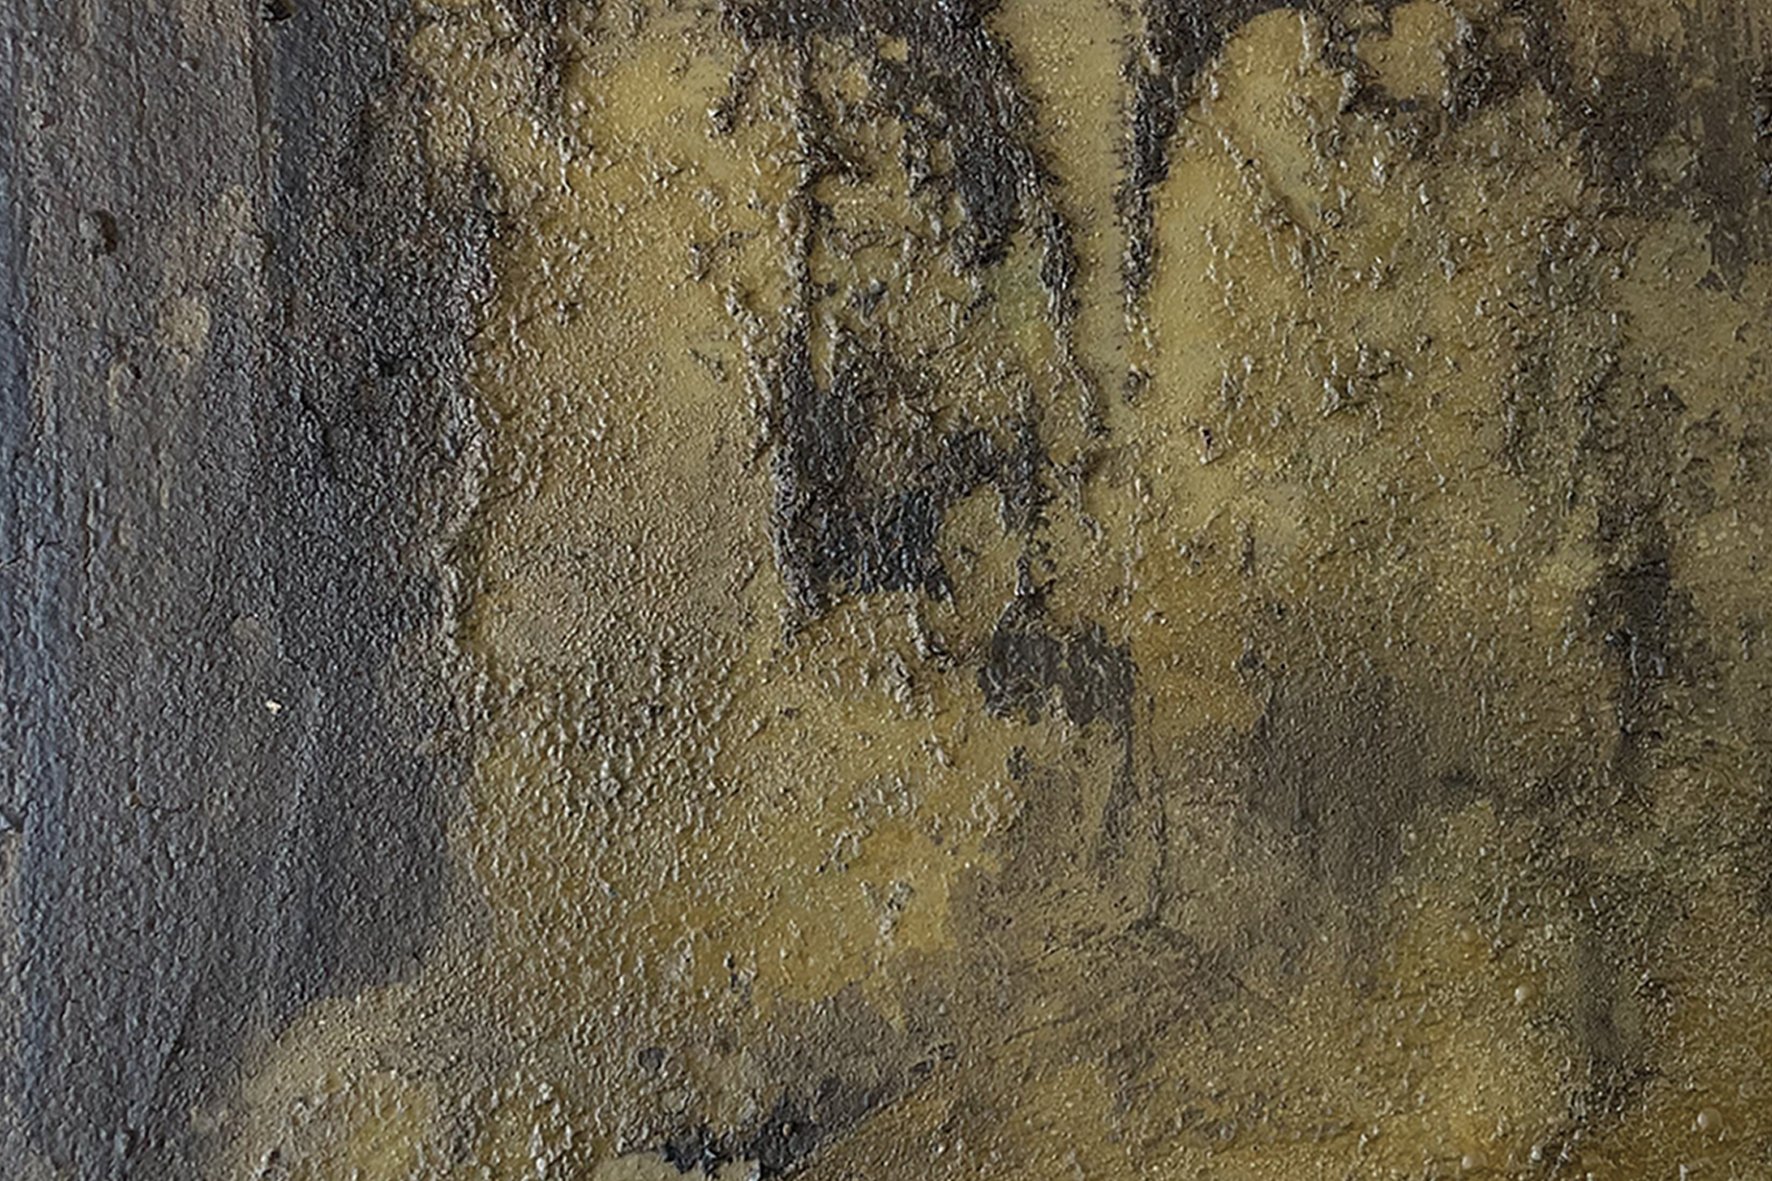 KaraBurrowes-painting-brown-grit-detail-LR.jpg